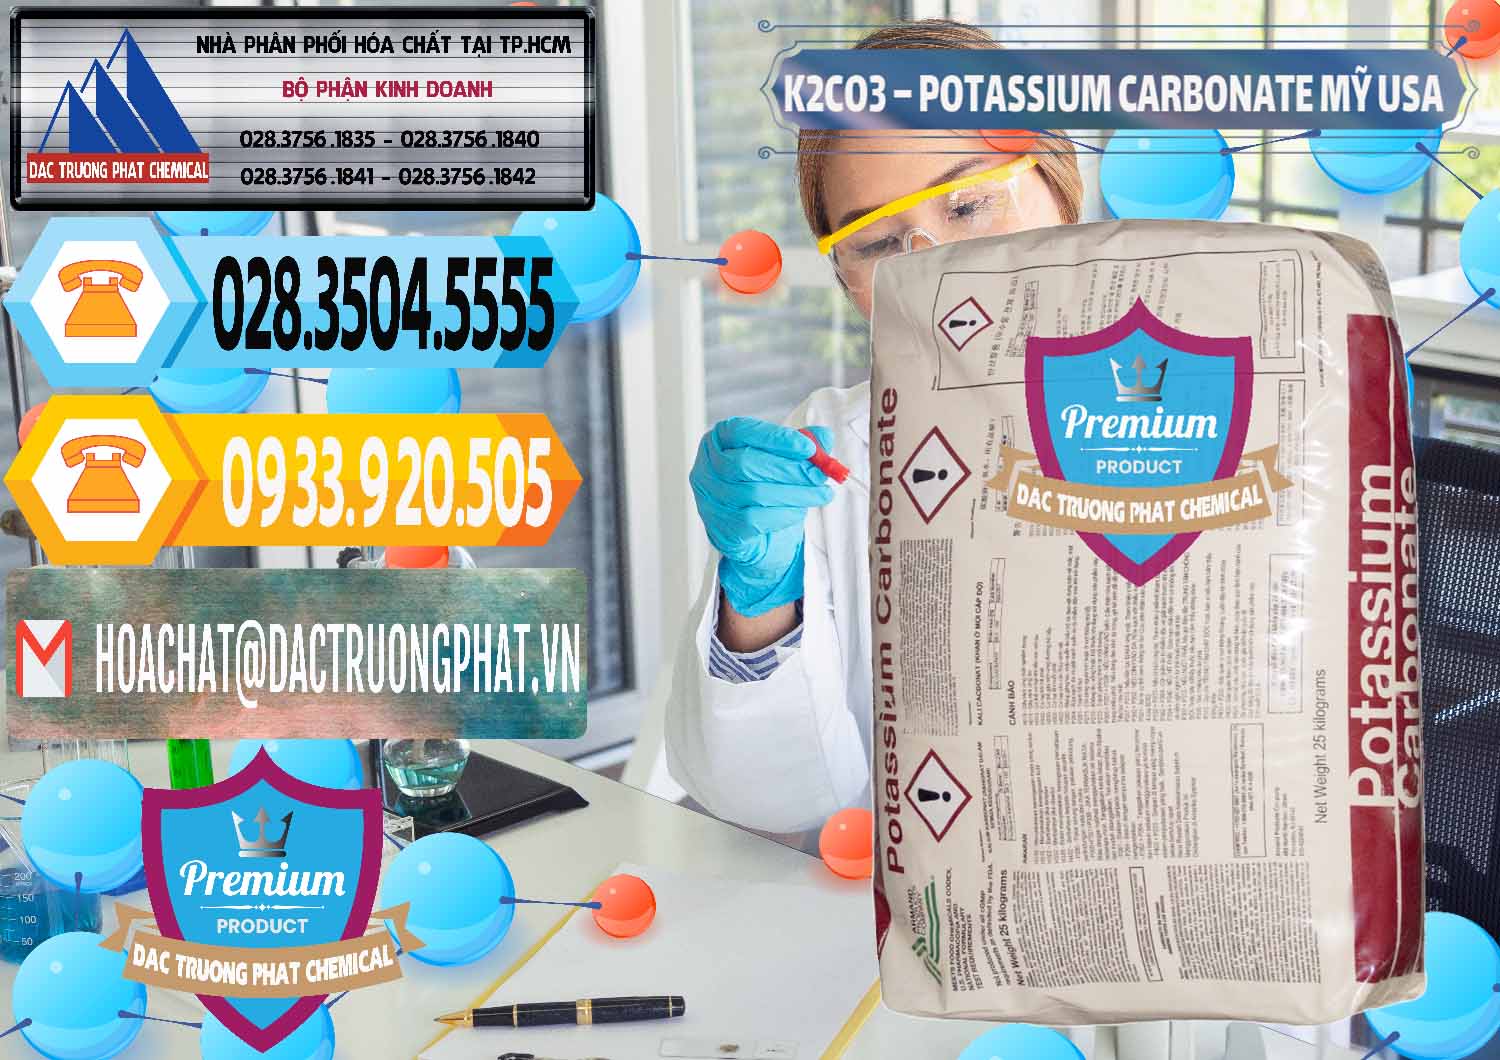 Nơi chuyên kinh doanh và bán K2Co3 – Potassium Carbonate Mỹ USA - 0082 - Kinh doanh & cung cấp hóa chất tại TP.HCM - hoachattayrua.net